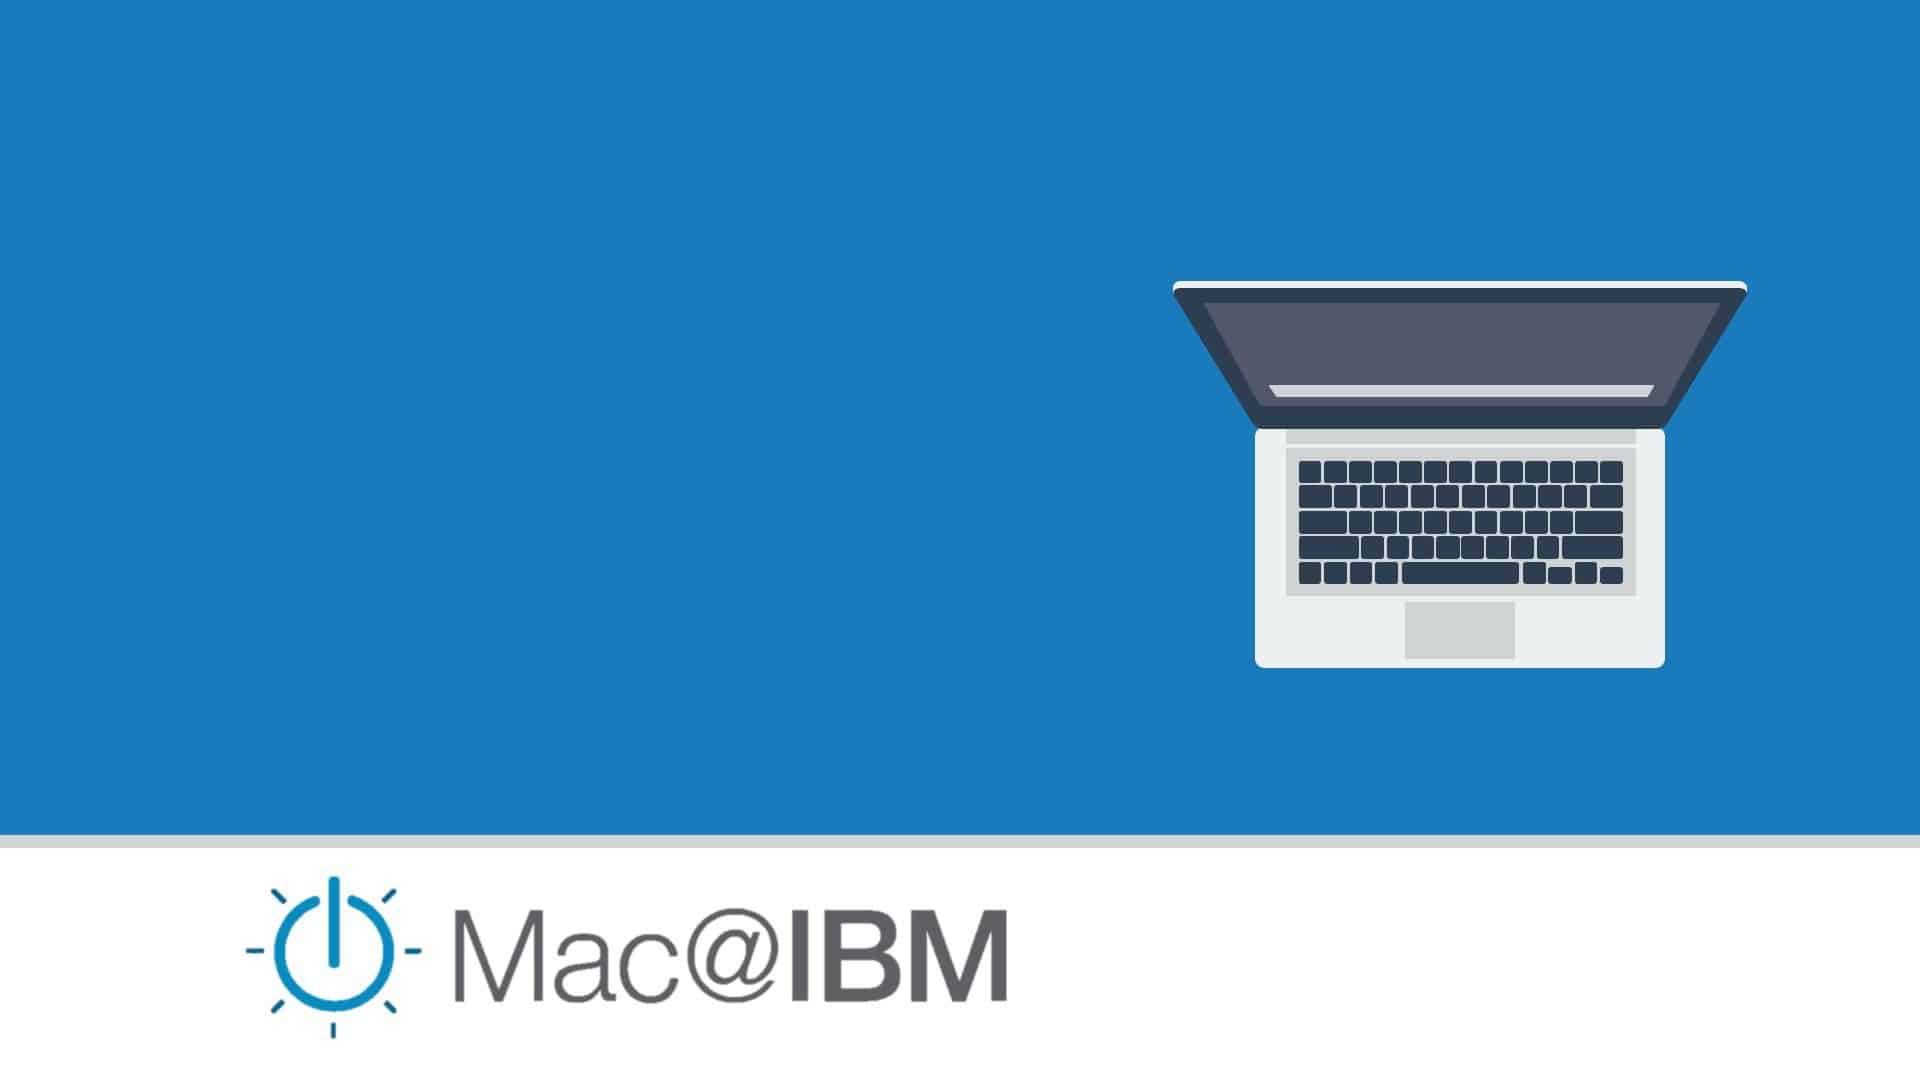 Mac @ IBM